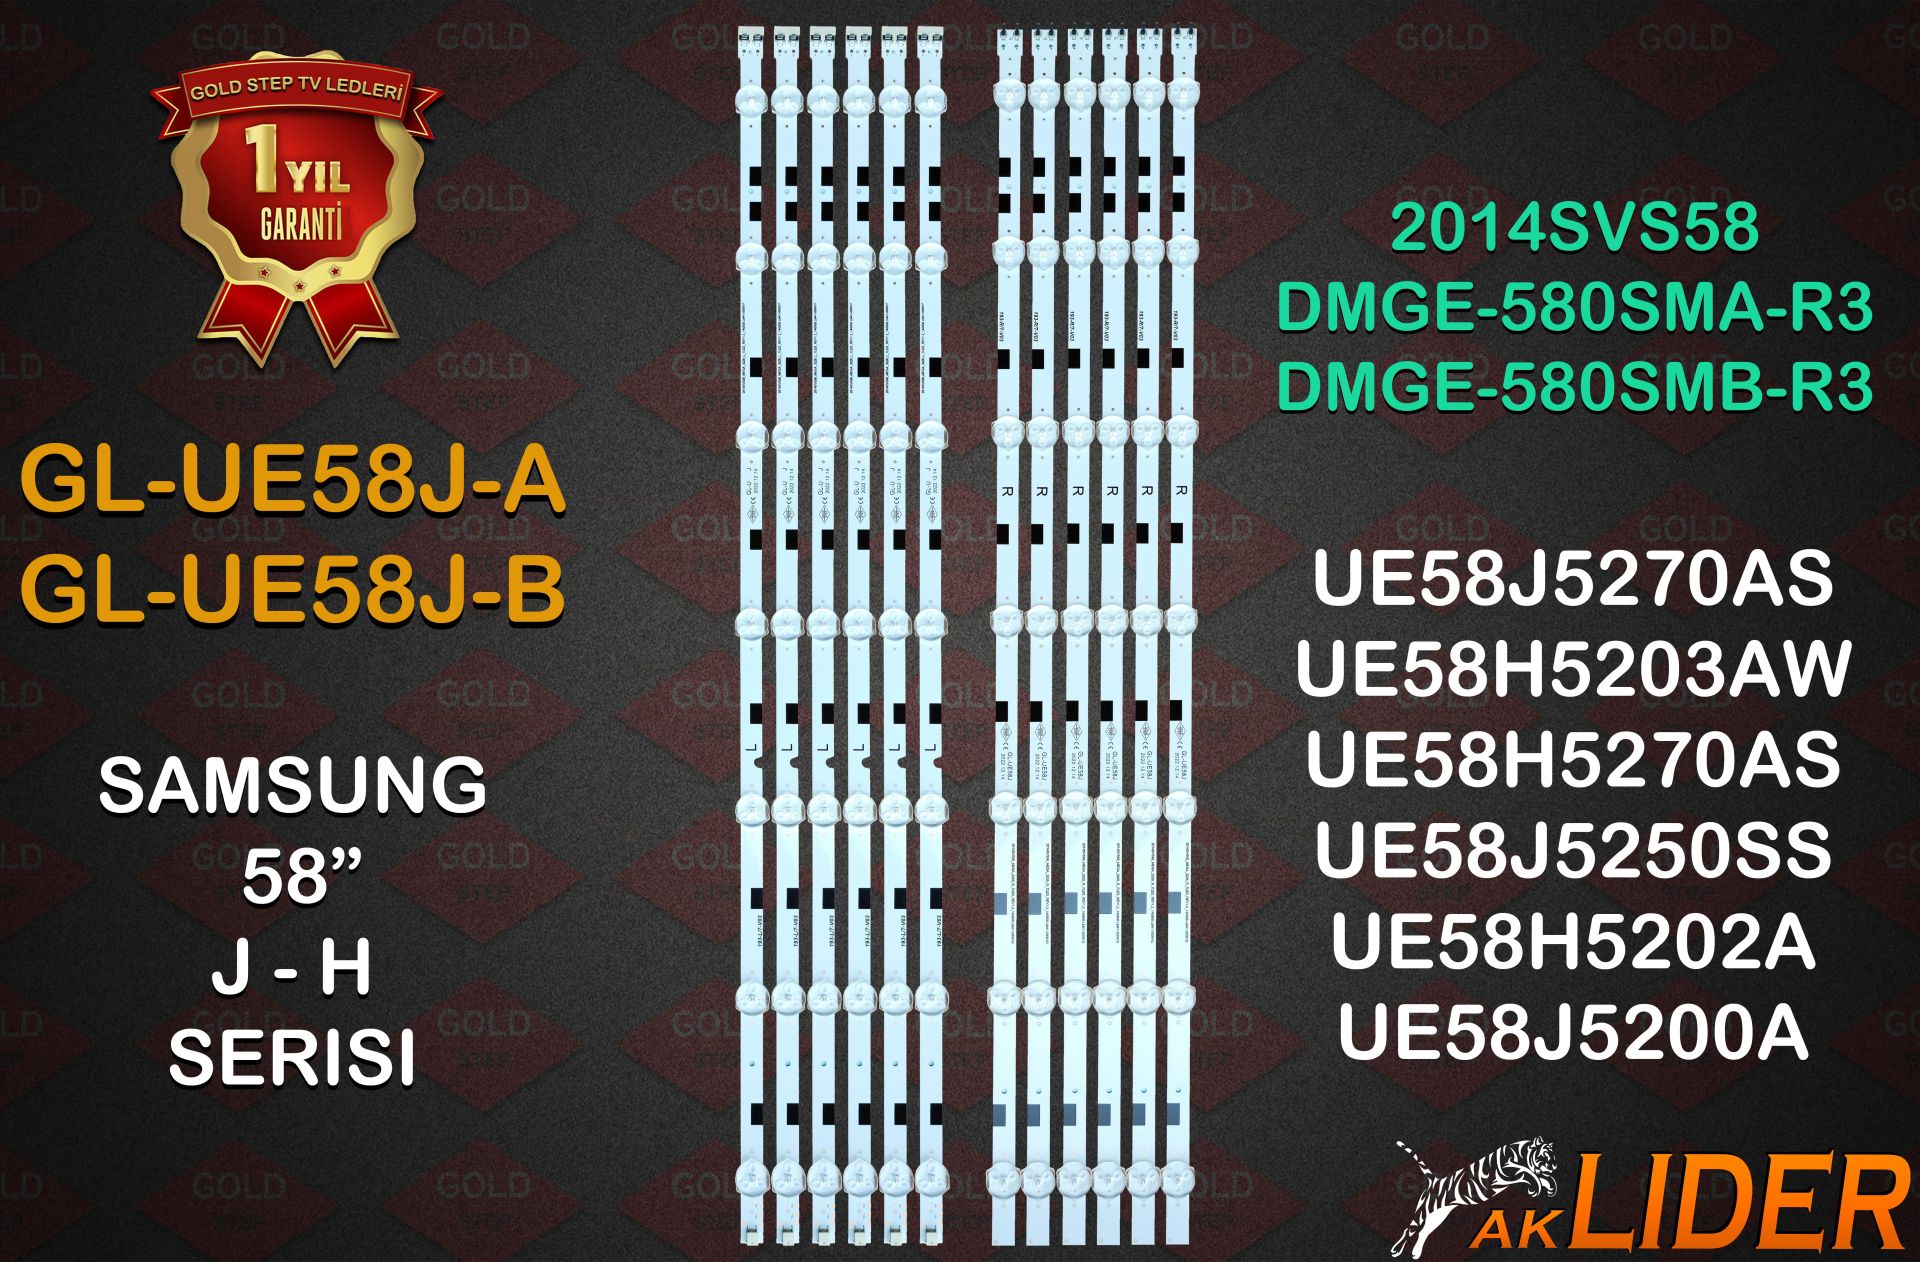 SAMSUNG 58'' 2014SVS58 DMGE-580SMA